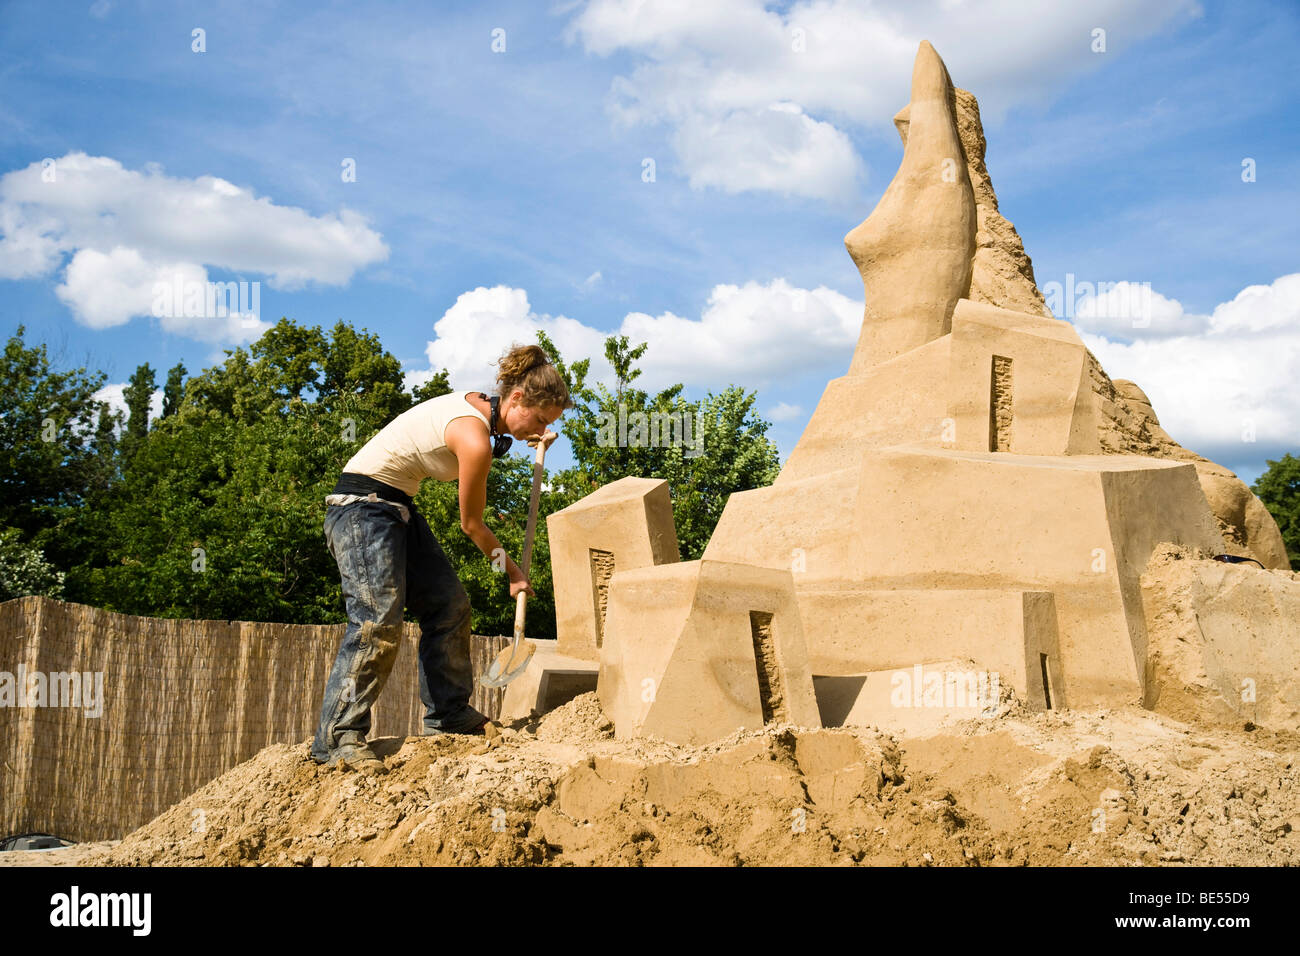 Copenhagen International Sand Sculpture Festival 2012: The